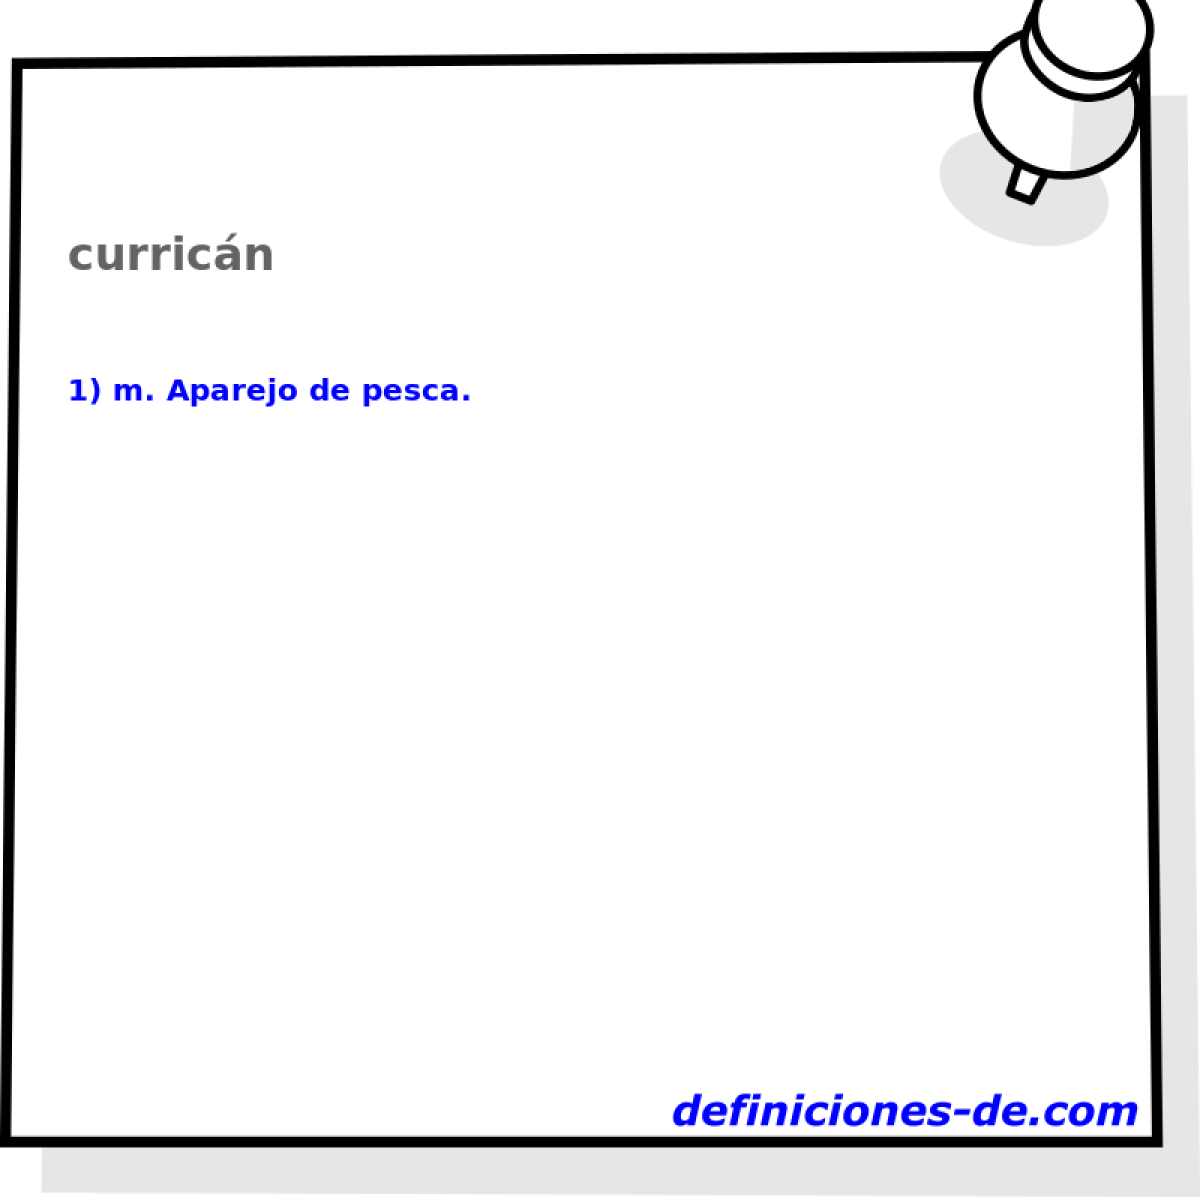 curricn 